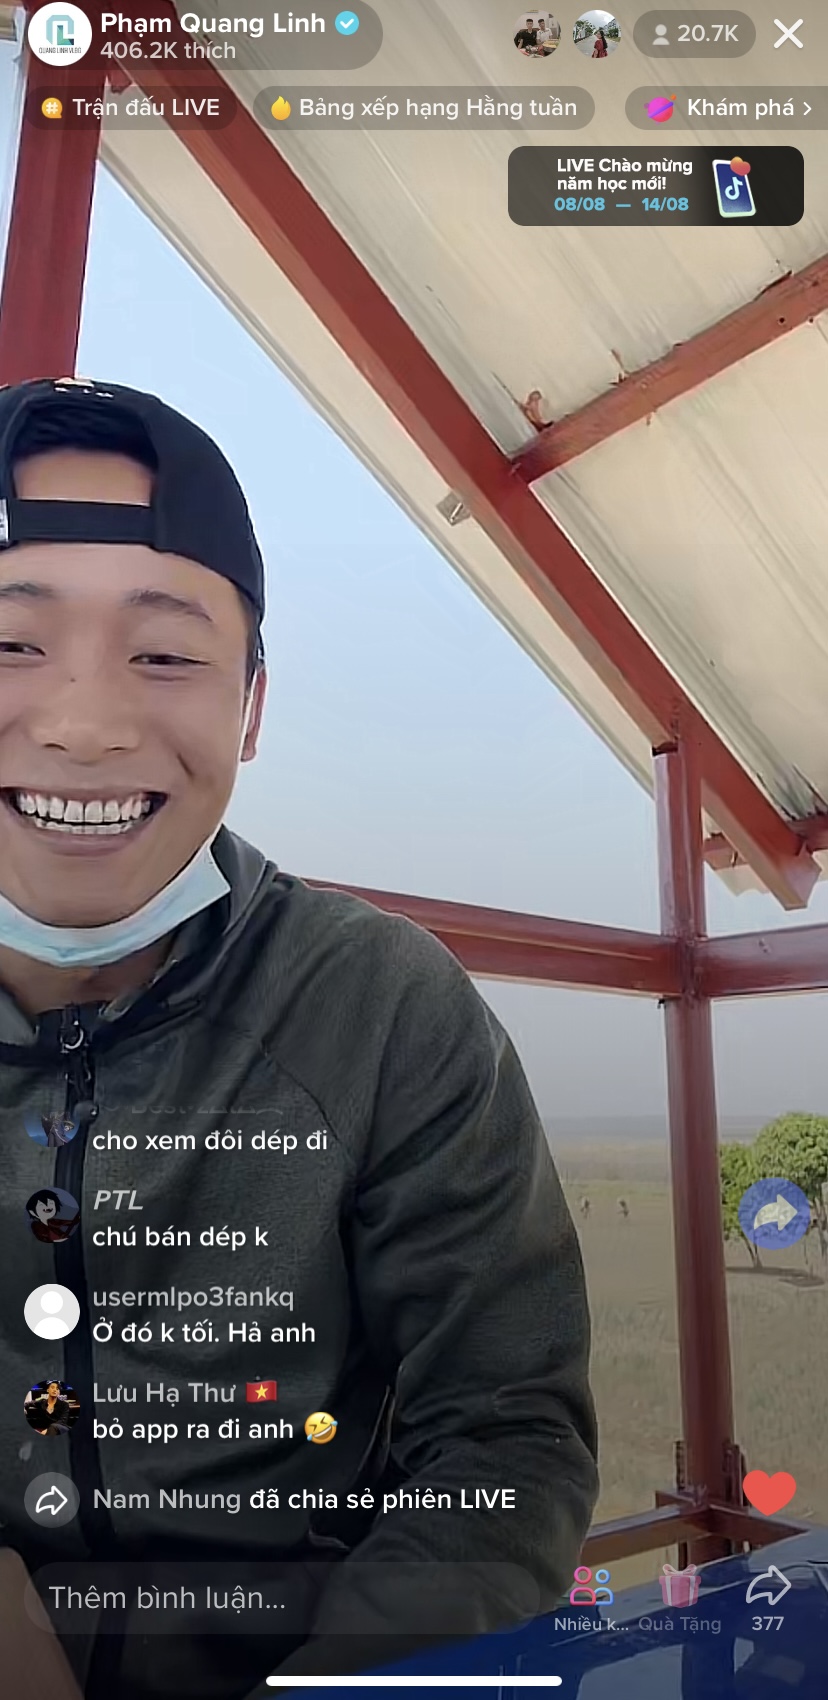 Quang Linh Vlogs khoe dùng App khi livestream TikTok, sự khác biệt khiến fan ngỡ ngàng - Ảnh 3